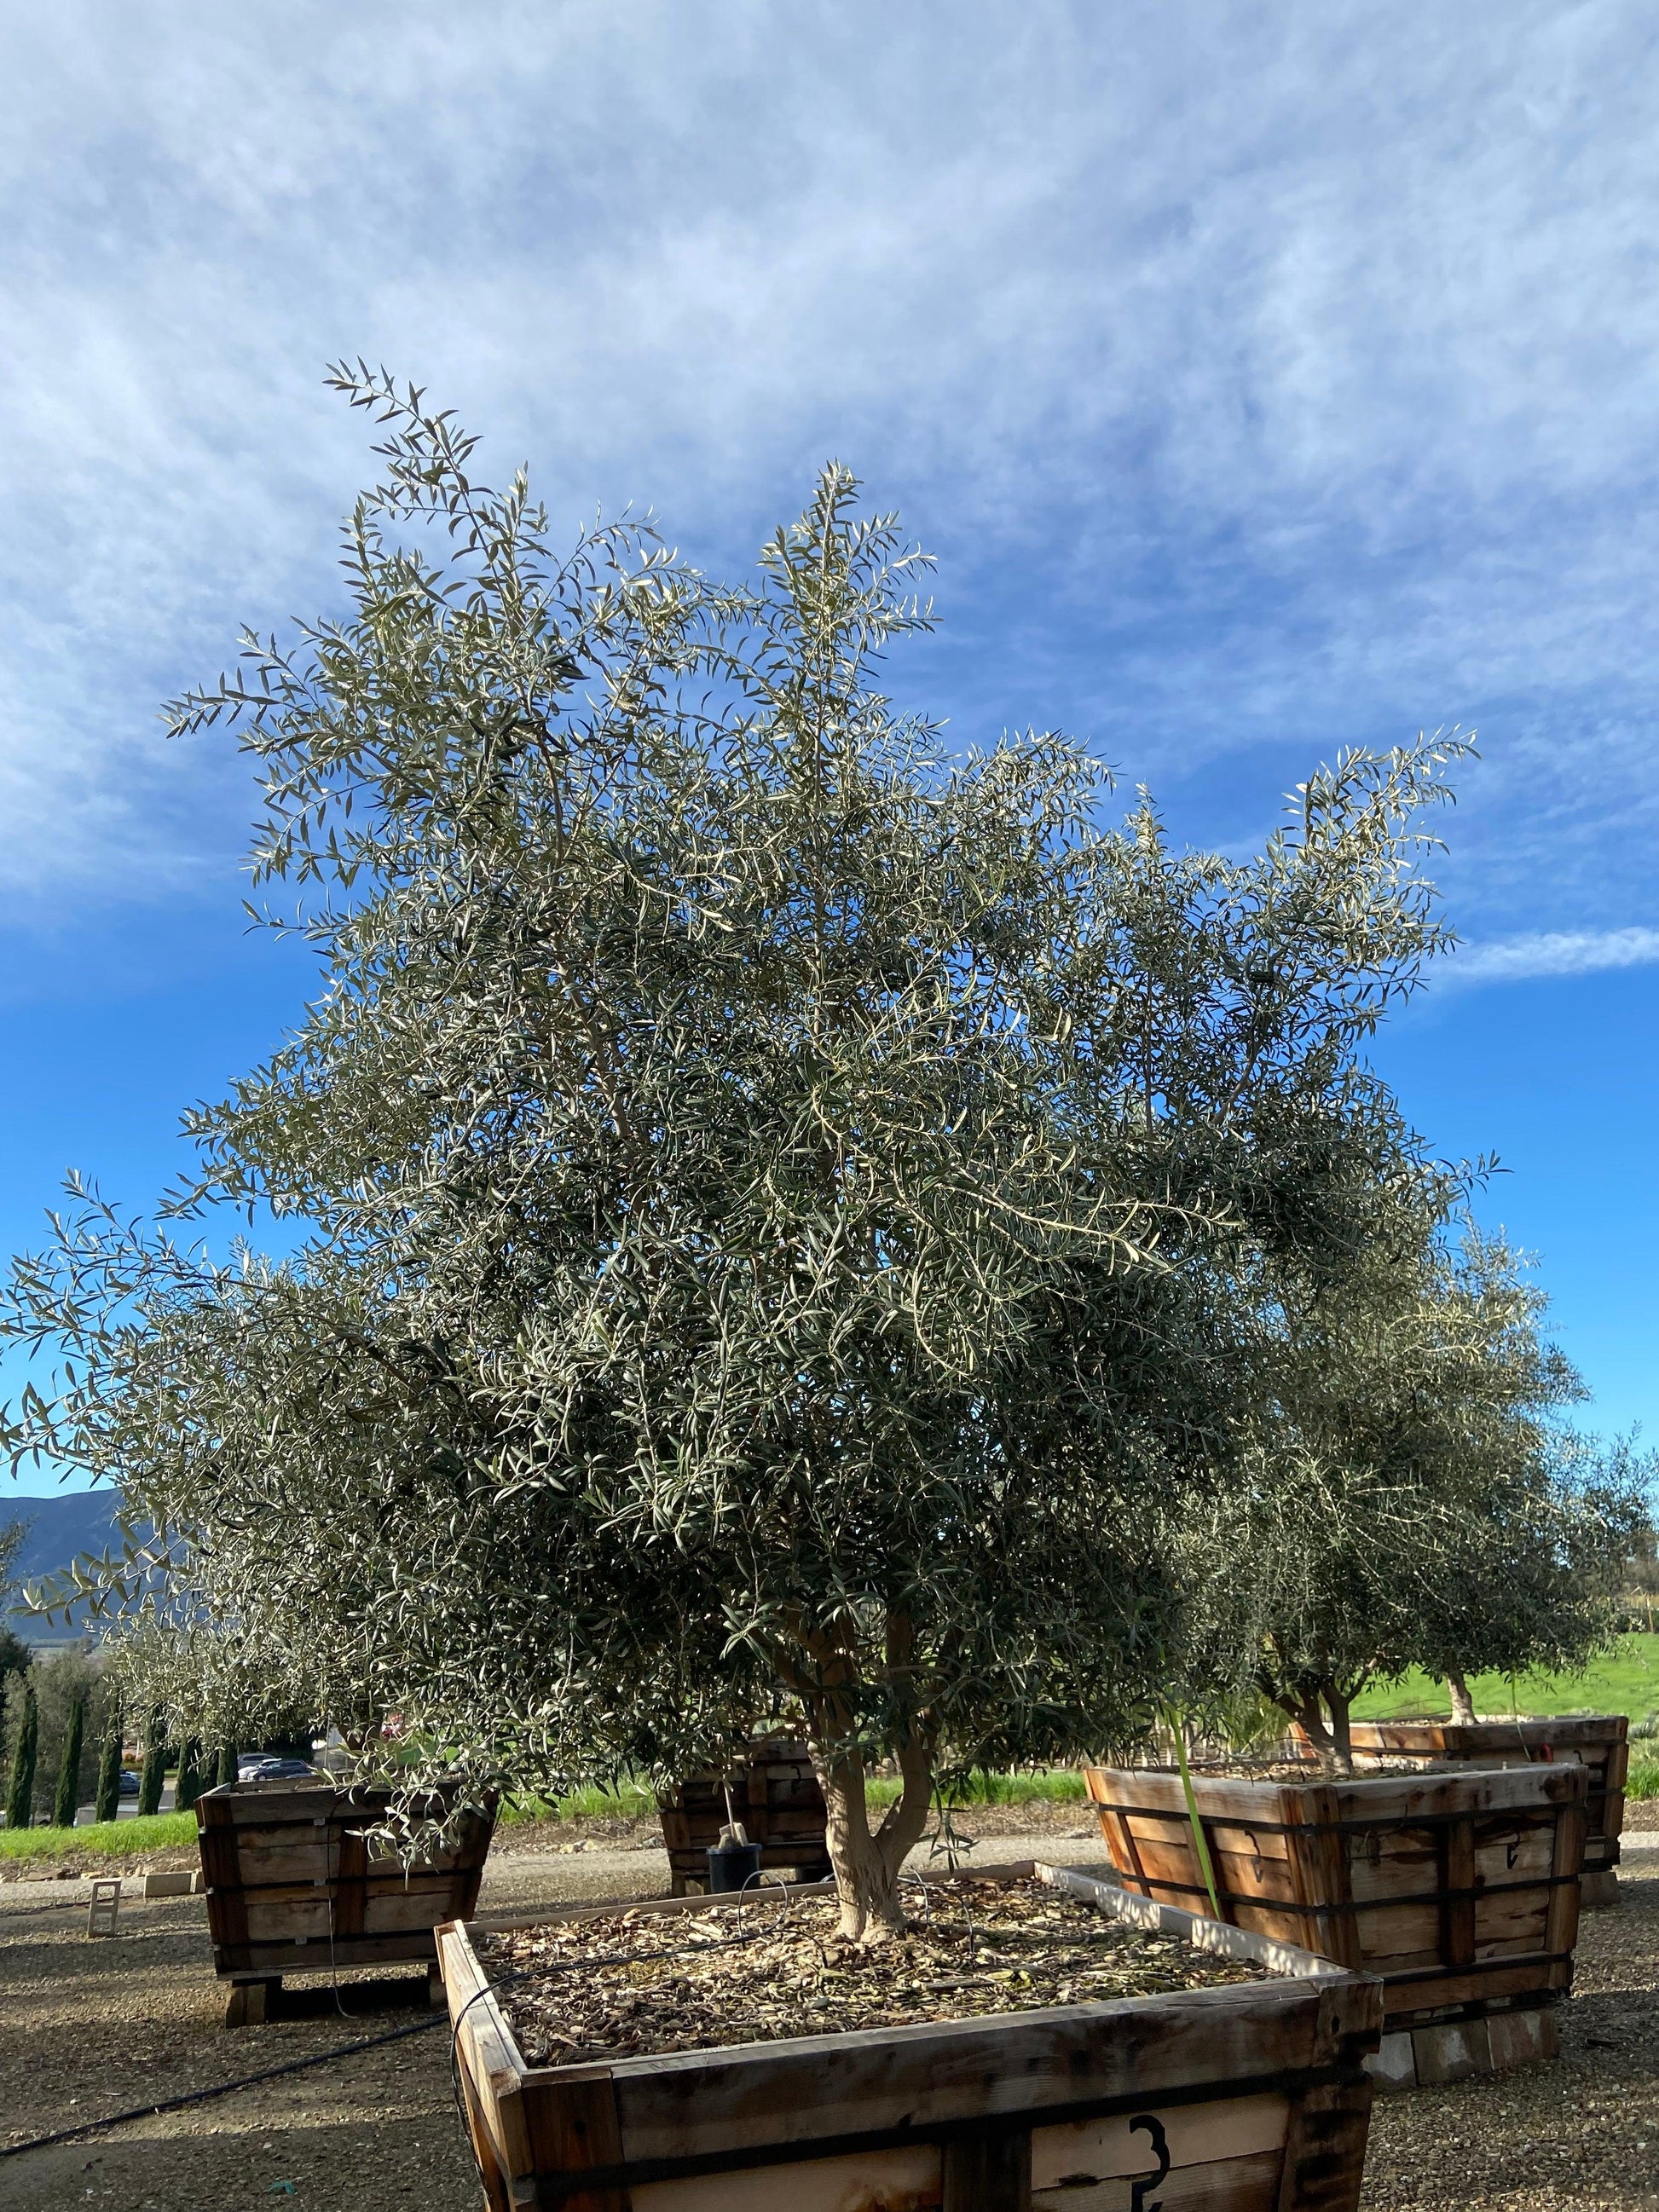 Sevillano Olive Trees - Olive Tree Farm